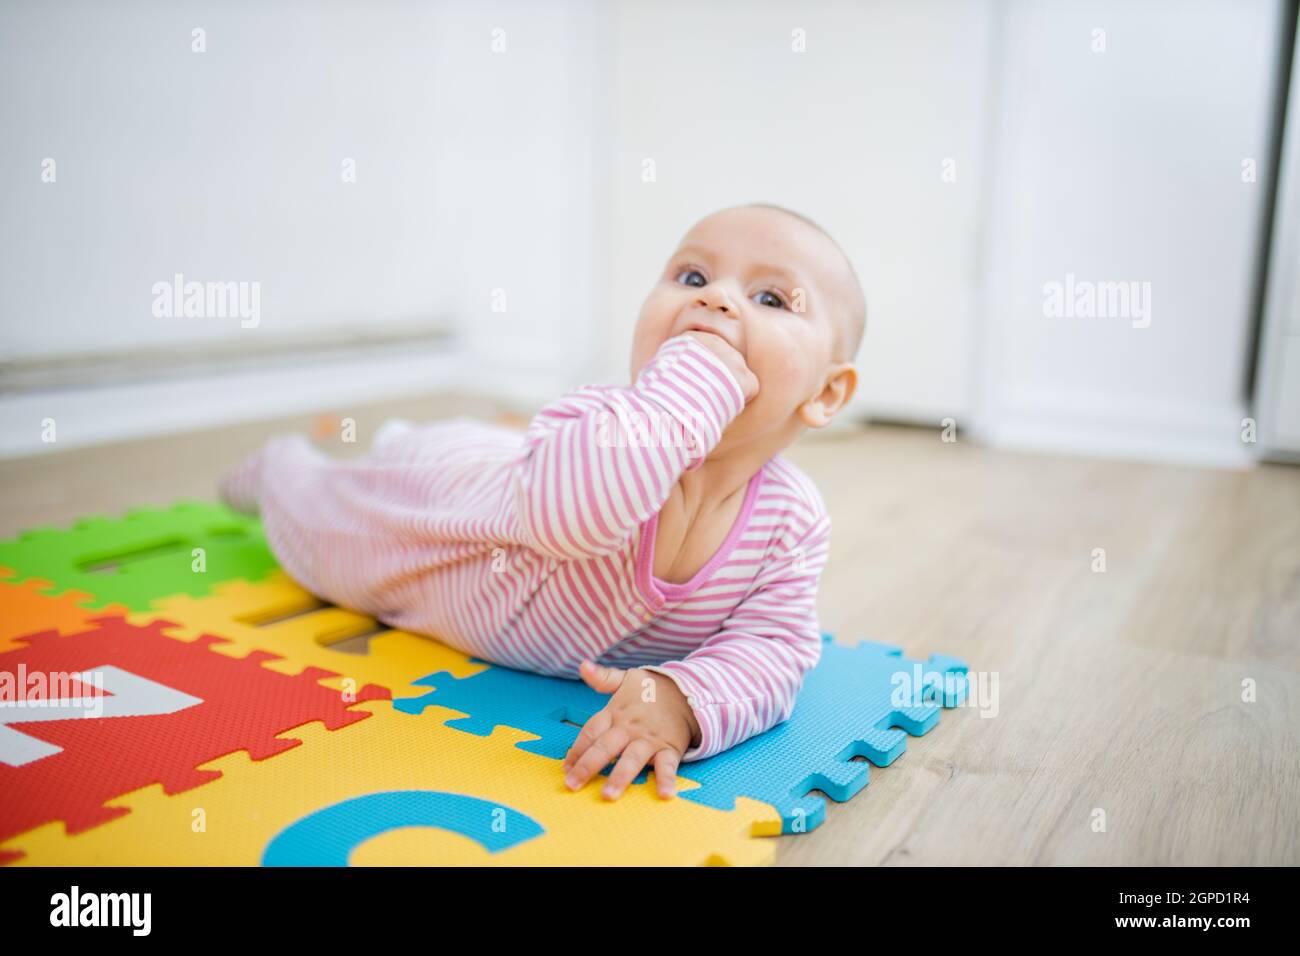 Entzückendes Baby, das mit dem Gesicht nach unten auf der bunten Kindermatte liegt, mit der Faust im Mund. Portrait von fröhlichem Baby, das auf dem Boden spielt. Glückliche Babys mit f Stockfoto